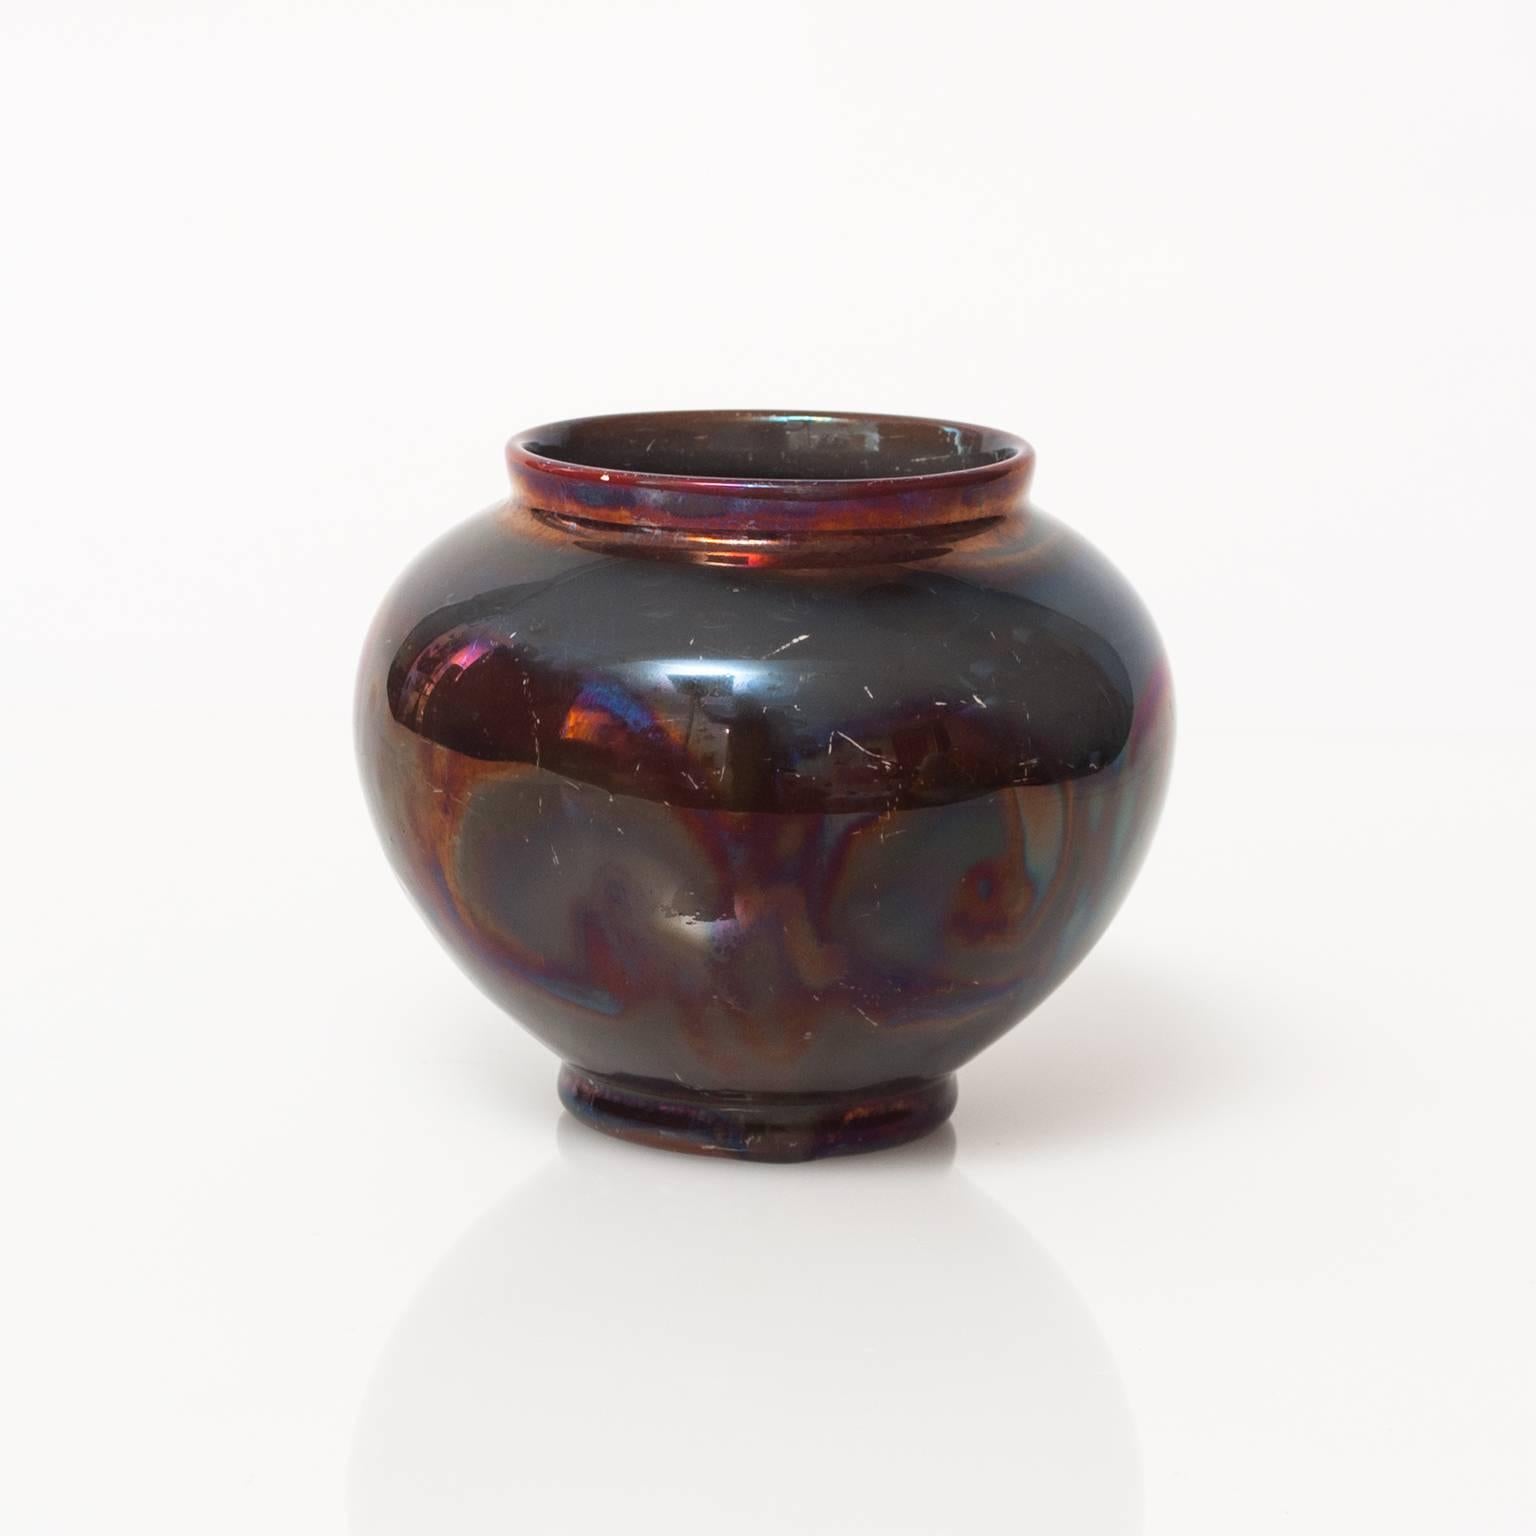 Seven Art Deco Luster Glazed Ceramic Vases by Edgar Bockman for Hoganas (Glasiert)